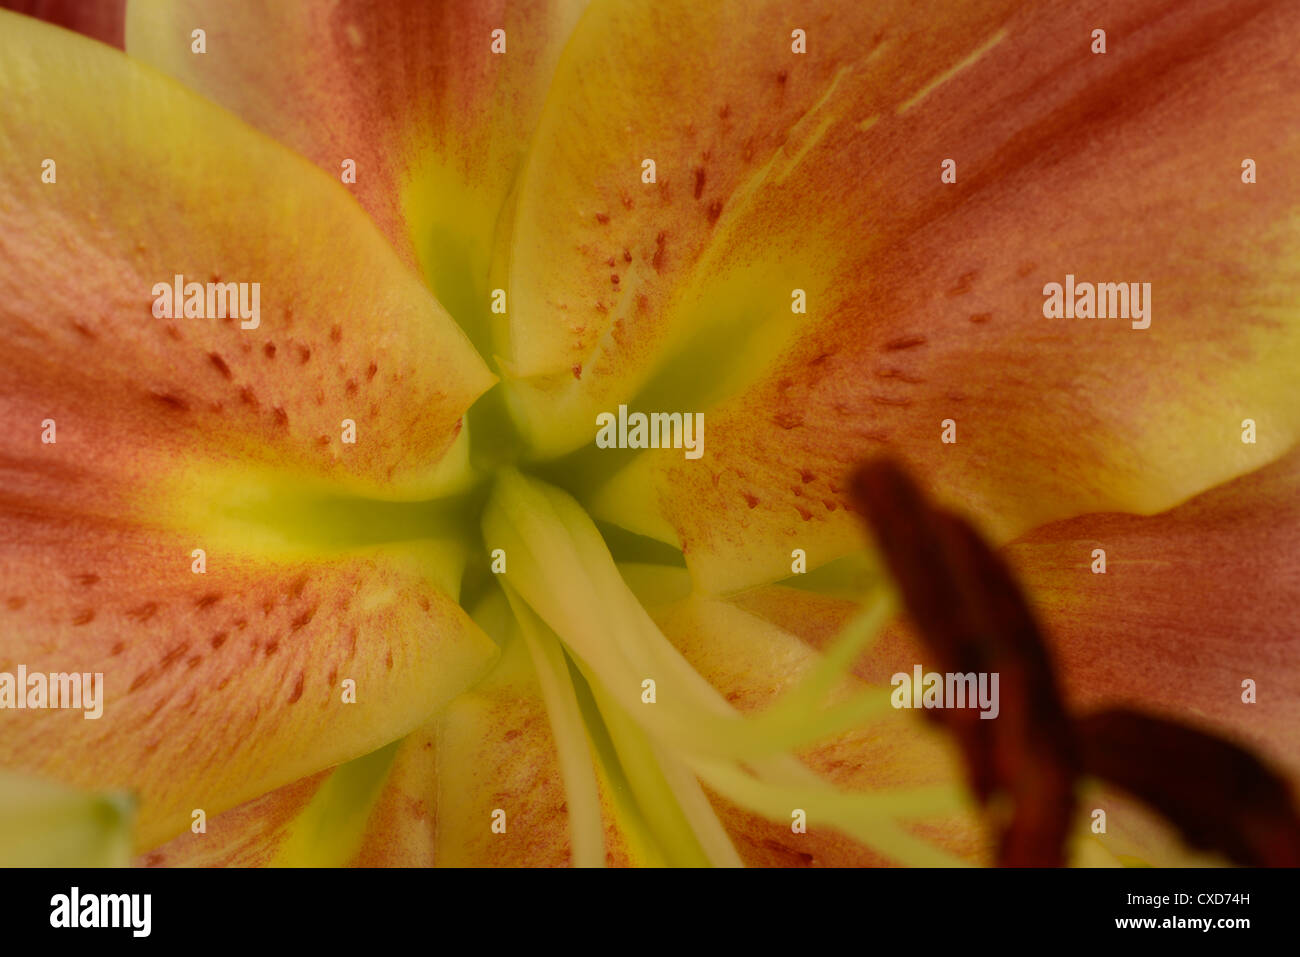 Chiusura del fiore di giglio con il polline e antere, che mostra gli stili emergenti. Foto Stock